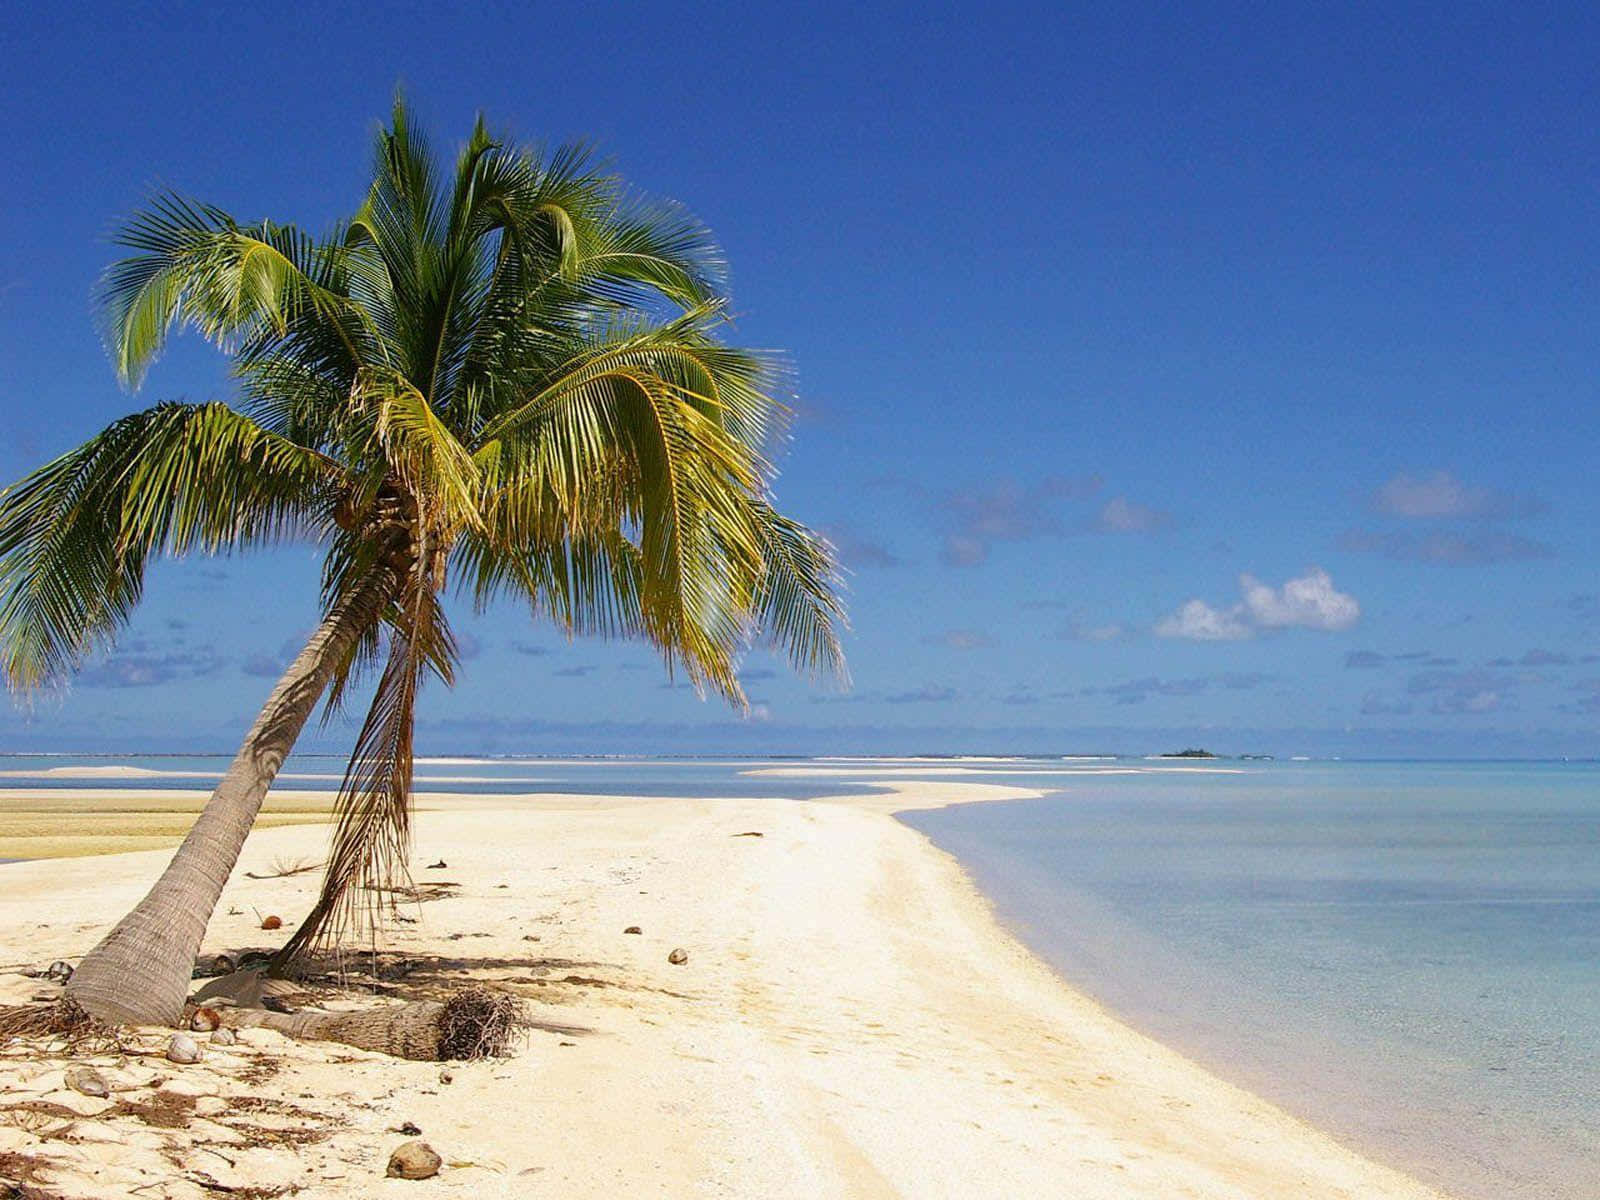 Pantai Beach Palm Tree Picture